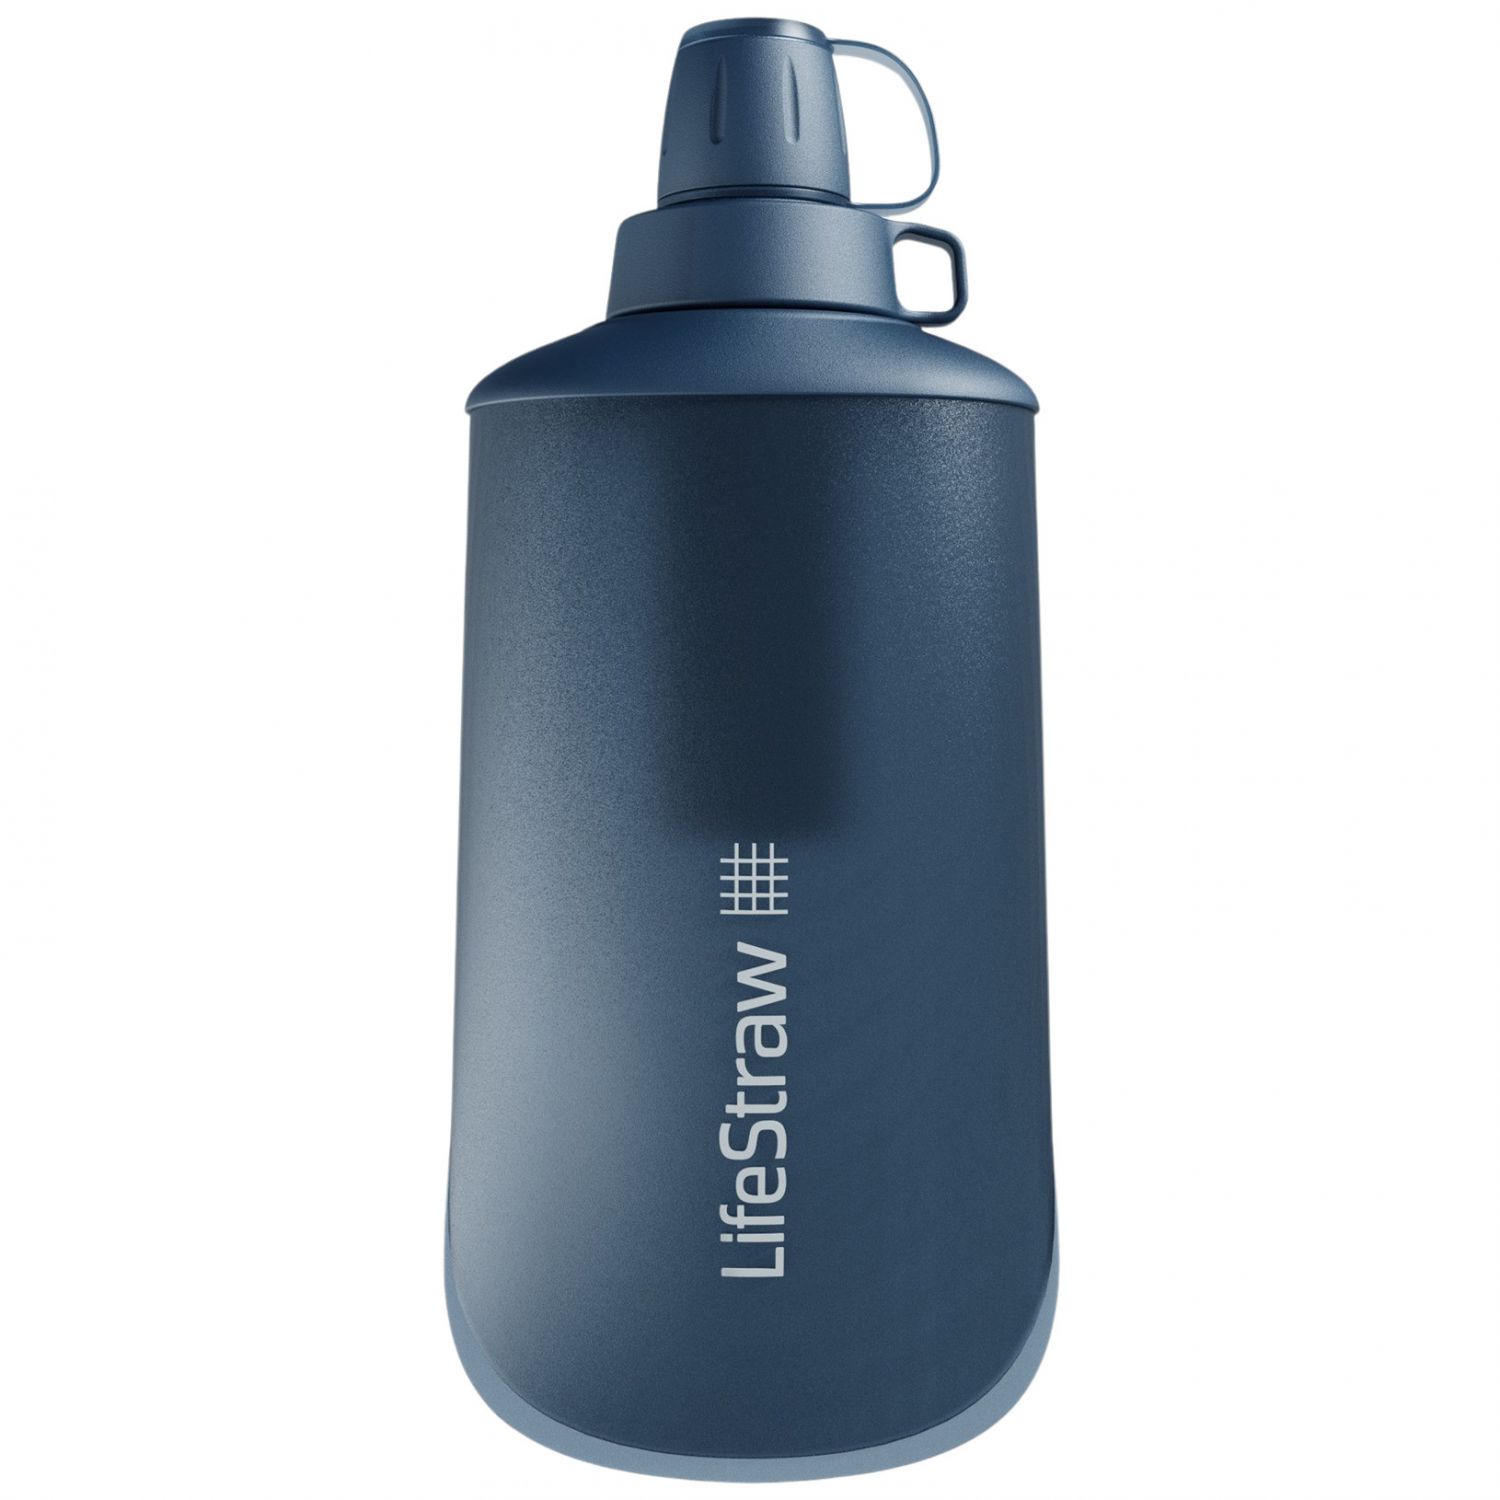 Brug LifeStraw Peak Series Collabsible Squeeze Bottle, 650ml, mørkeblå til en forbedret oplevelse